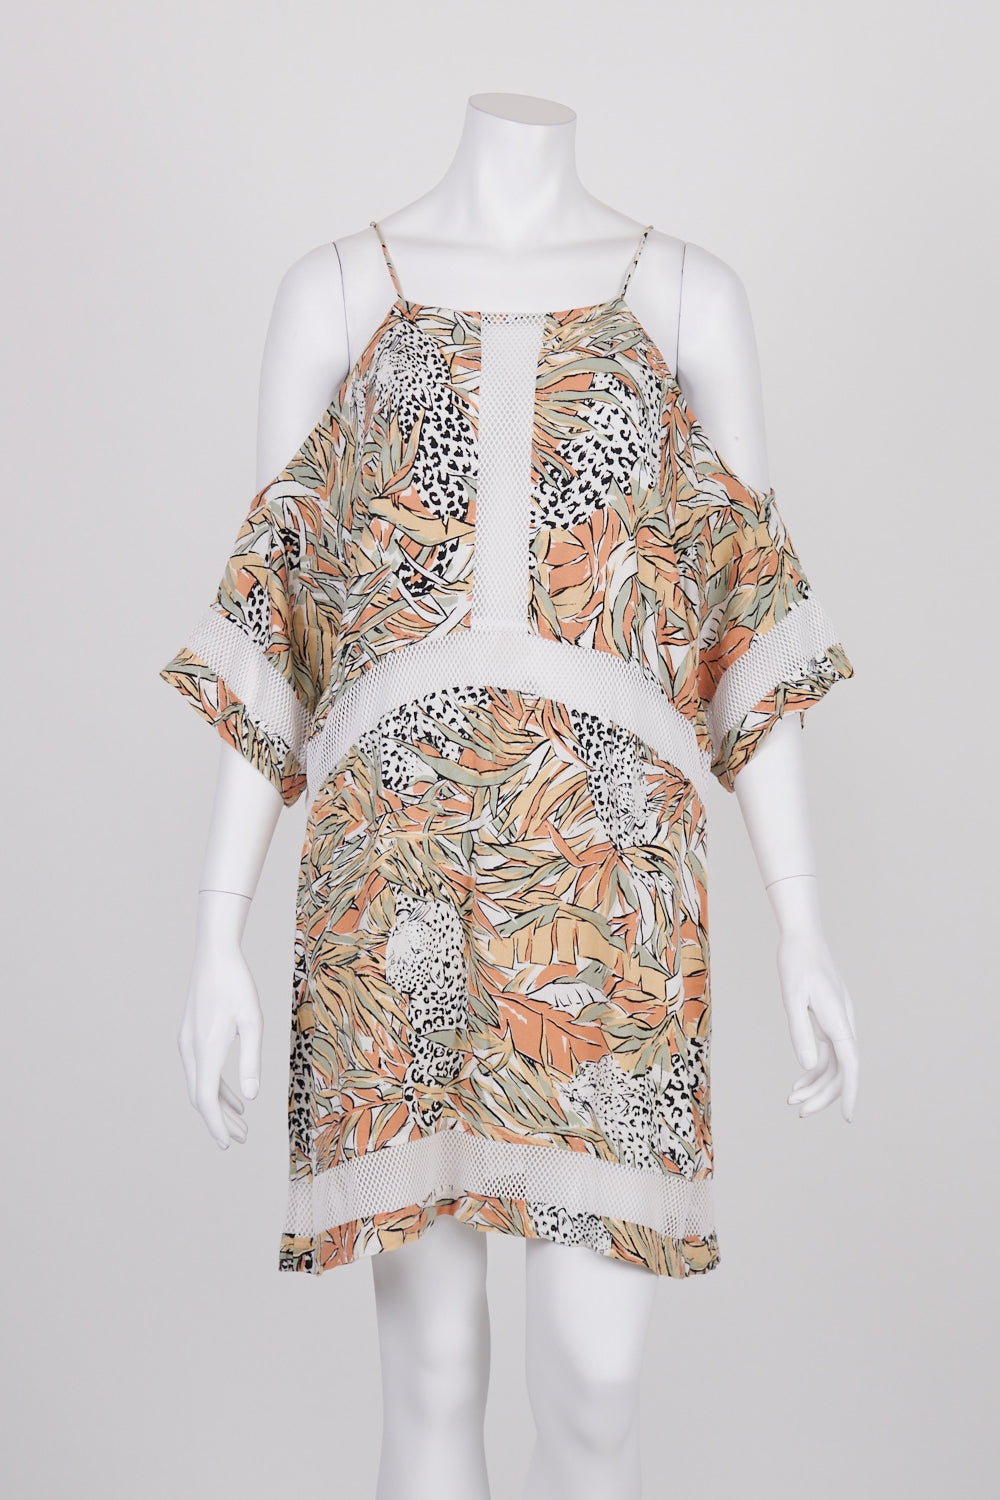 Zulu & Zephyr Pink Patterned Net Detail Dress 10